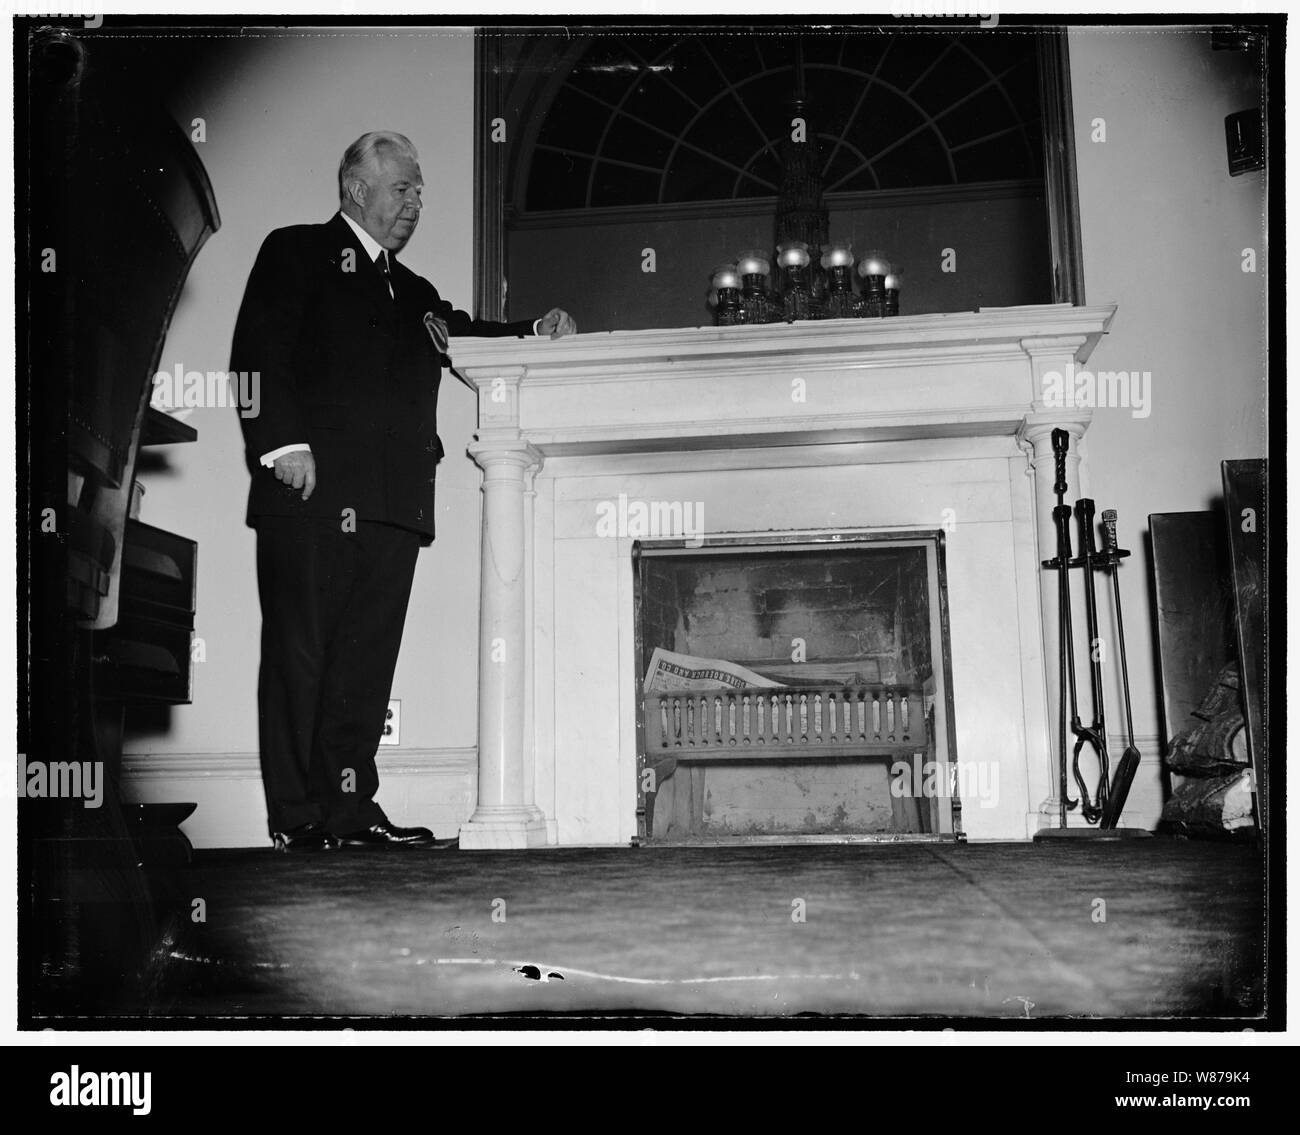 Historischen Kamin. Washington, D.C., Sergeant der Arme von Senat, Chesley W. Jurney ist stolz auf Kamin in seinem Büro in der Hauptstadt. Das Büro wurde ursprünglich durch den Obersten Gerichtshof der USA in einem Konferenzraum, wo der Kamin im Jahr 1800 installiert wurde. Es ist immer noch Pflicht, an kühlen Tagen, 3/24/38 Stockfoto